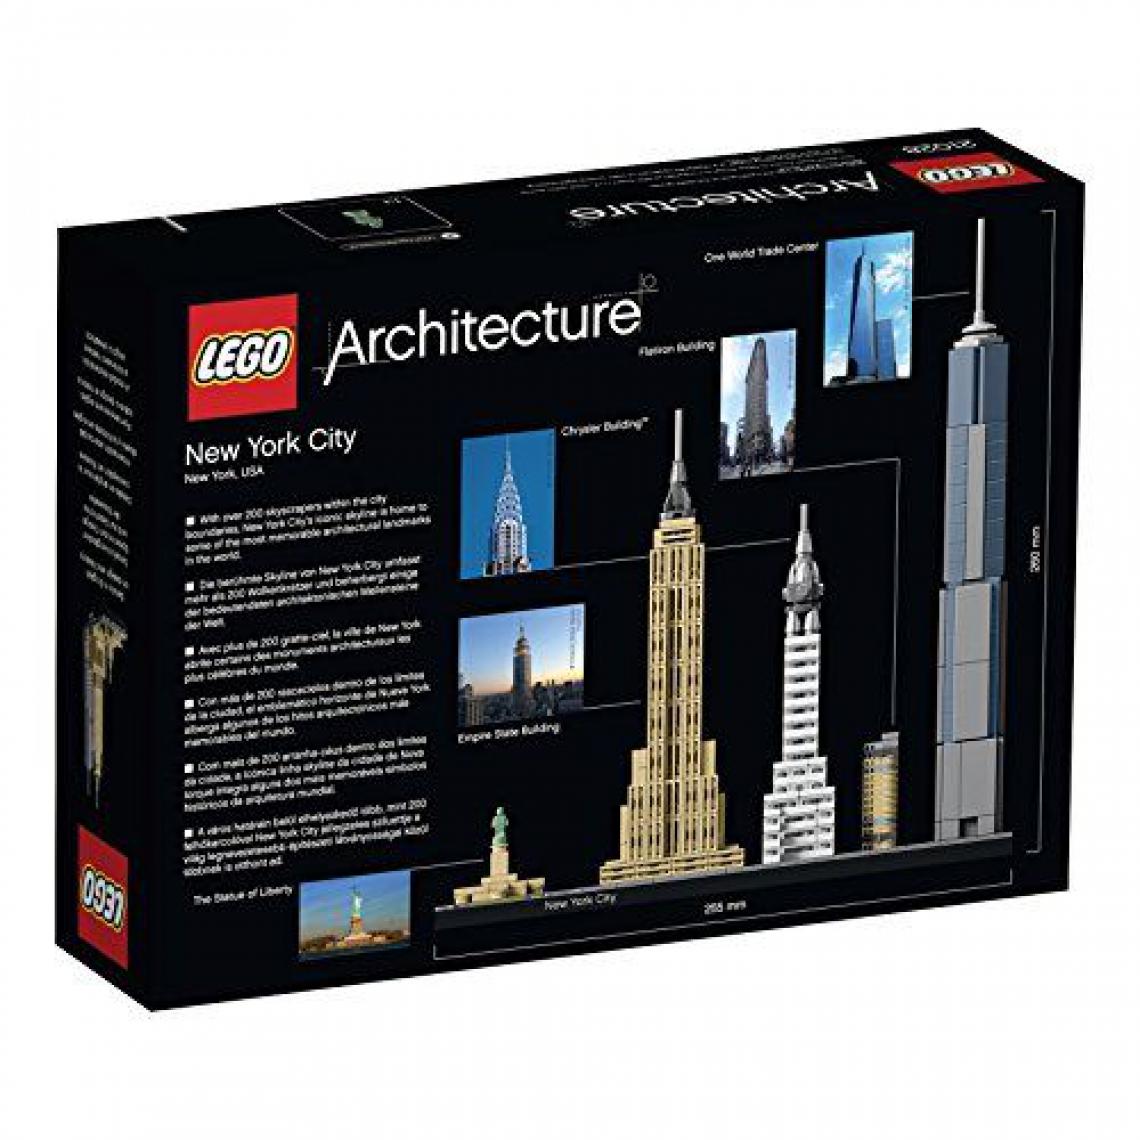 Lego - LEGO Architecture - New York - 21028 - Jeu de Construction - Briques et blocs